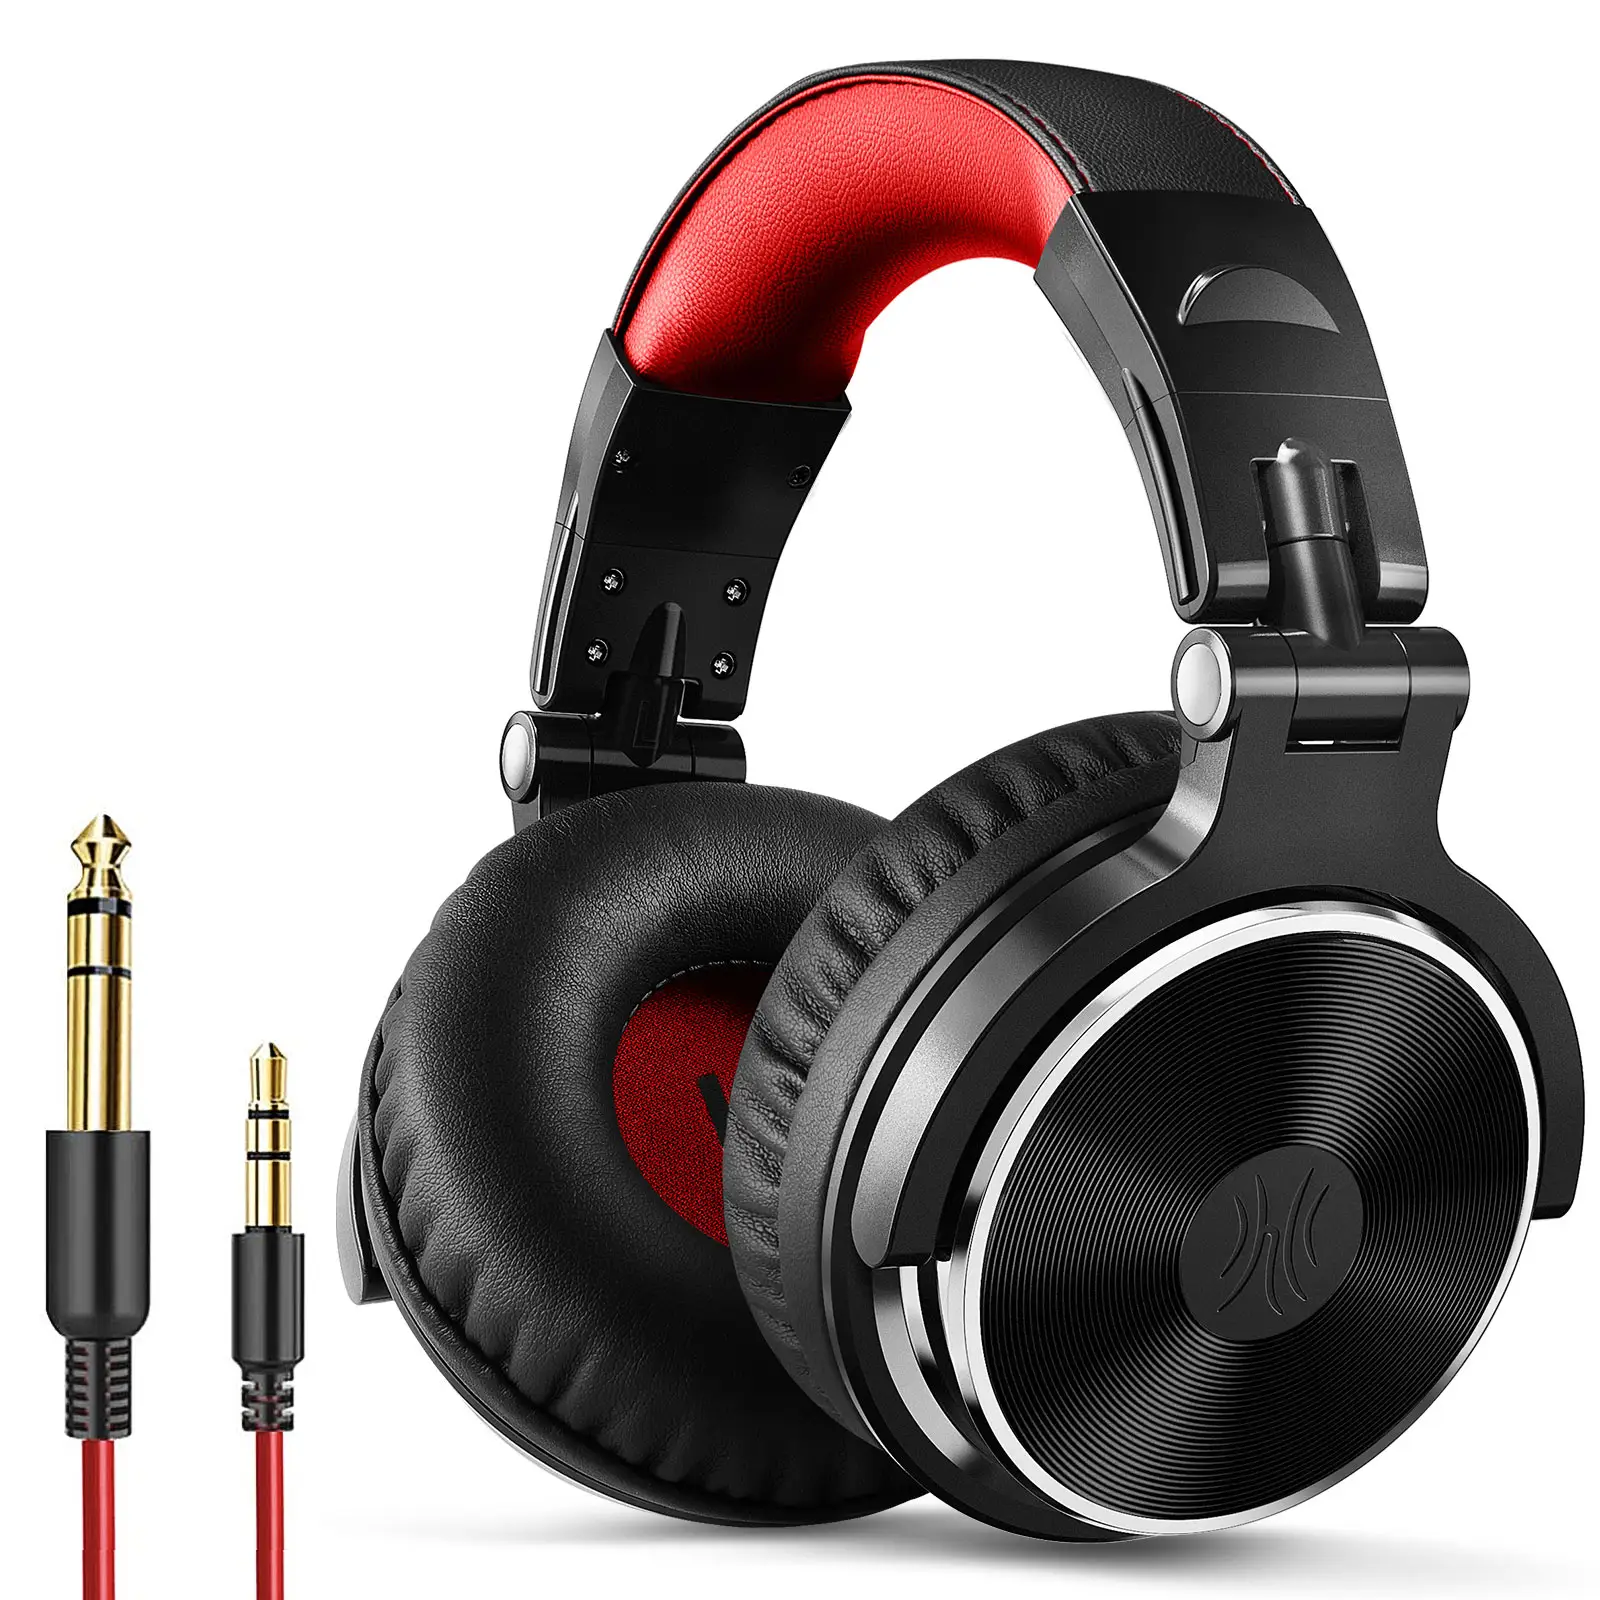 Wählen Sie Classic Oneodio Pro 10 Over-Ear DJ Wired Monitor DJ-Headset zu erschwing lichen Preisen